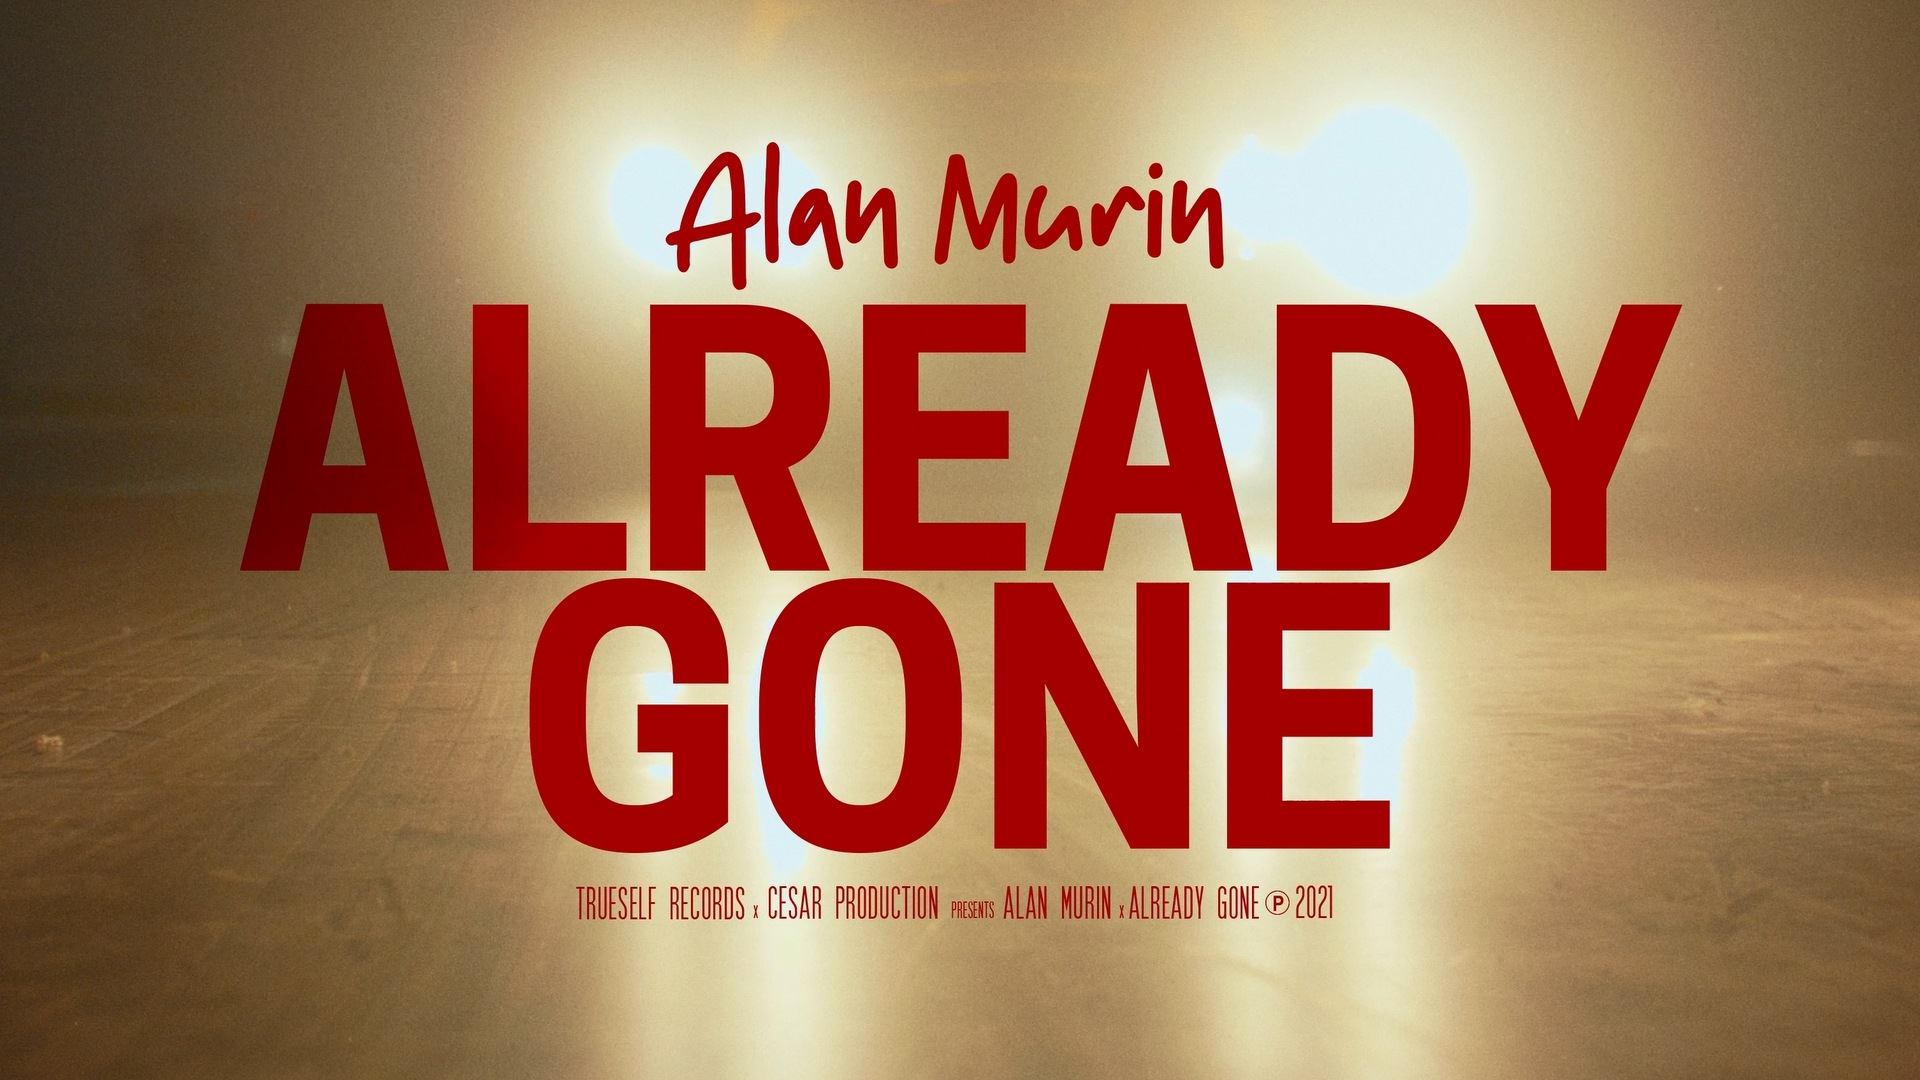 Alan Murin - Already gone